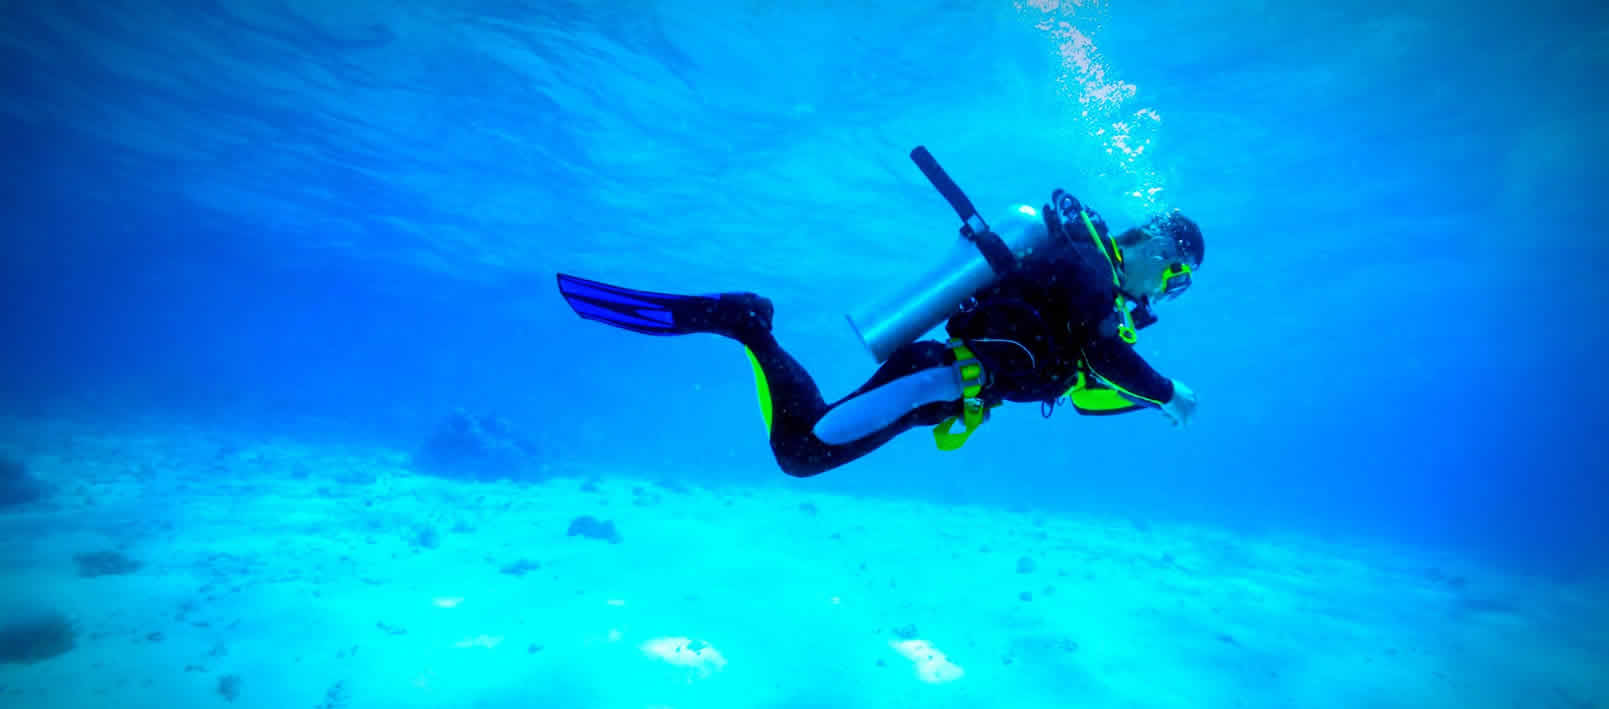 Scuba Dive Experience near Tarkarli